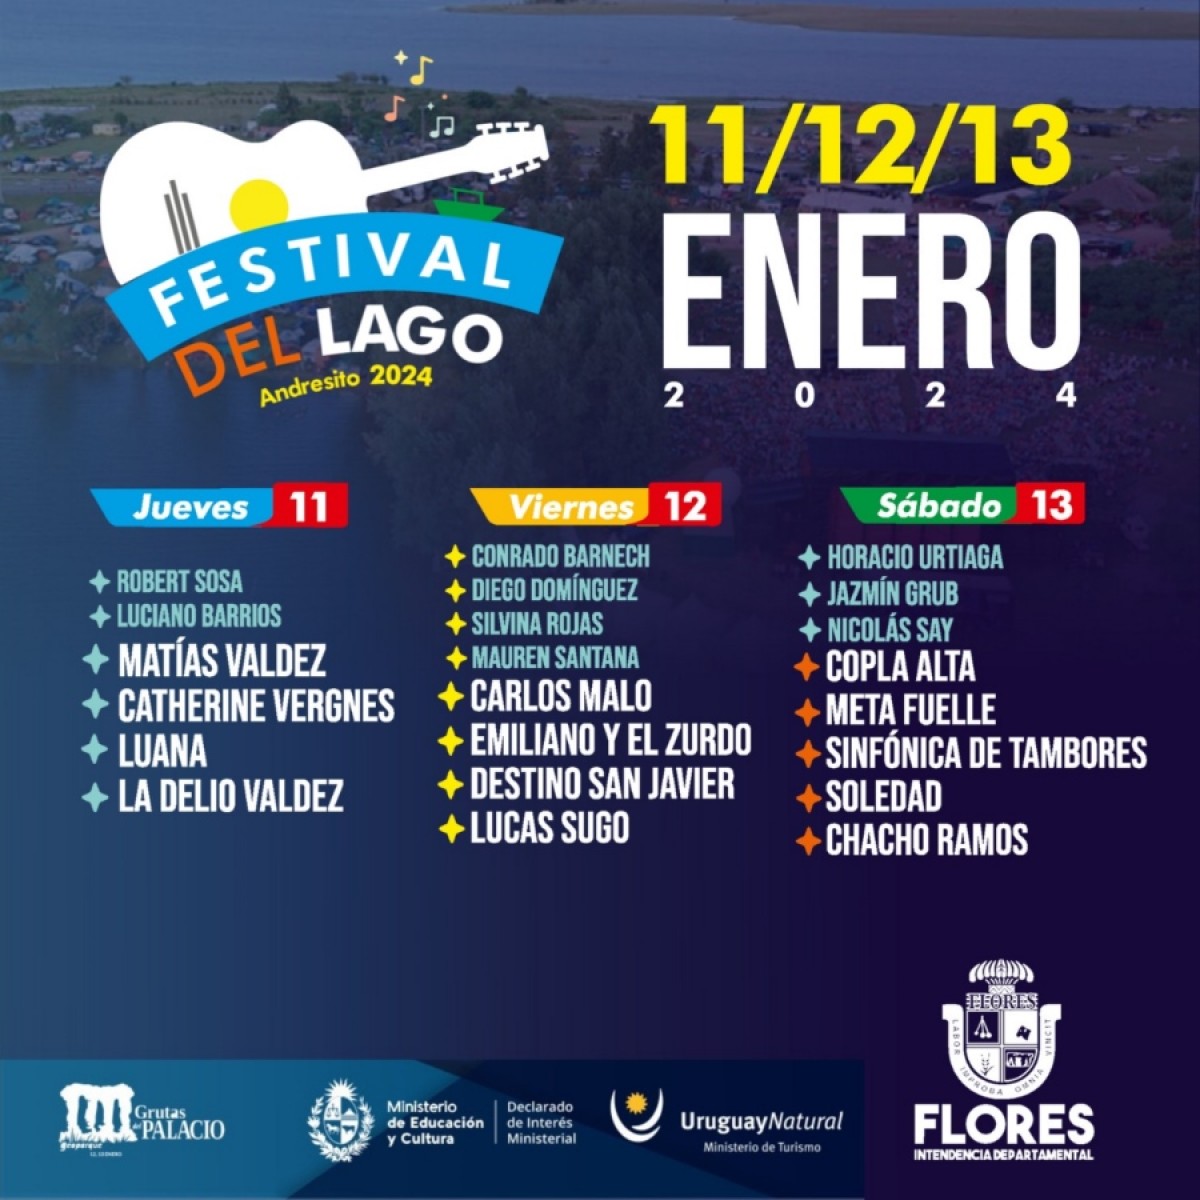 Lanzamiento del 31° Festival del Lago, Andresito le canta al país